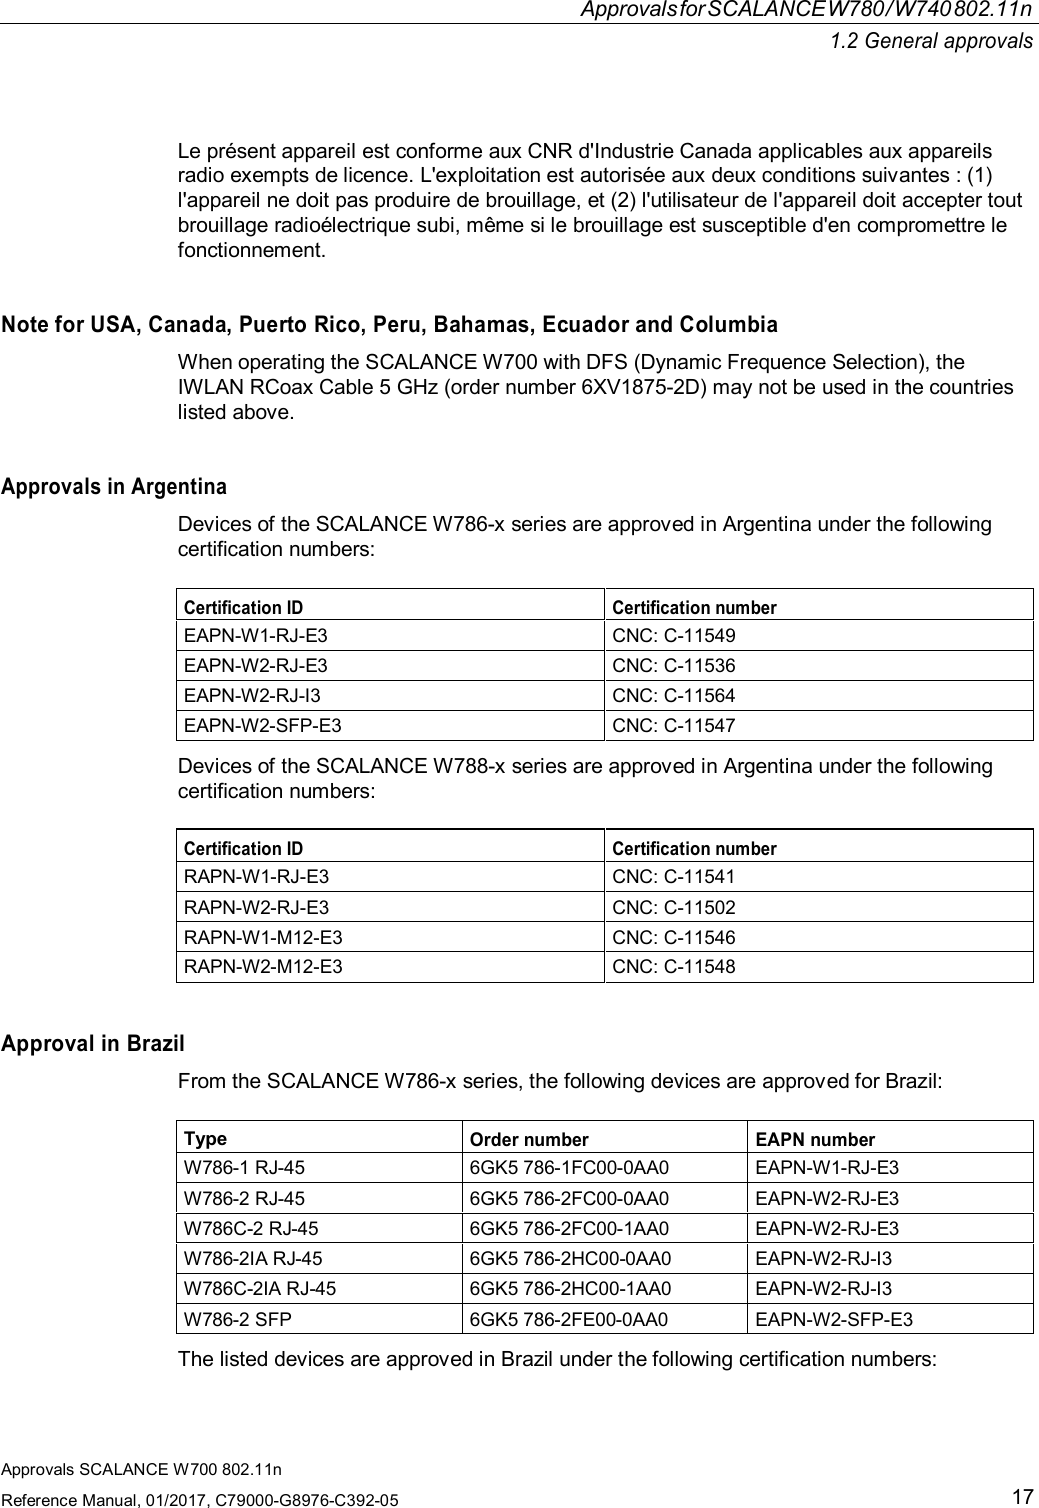 ApprovalsforSCALANCEW780/W740802.11n1.2 General approvalsApprovals SCALANCE W700 802.11nReference Manual, 01/2017, C79000-G8976-C392-0517Le présent appareil est conforme aux CNR d&apos;Industrie Canada applicables aux appareilsradio exempts de licence. L&apos;exploitation est autorisée aux deux conditions suivantes : (1)l&apos;appareil ne doit pas produire de brouillage, et (2) l&apos;utilisateur de l&apos;appareil doit accepter toutbrouillage radioélectrique subi, même si le brouillage est susceptible d&apos;en compromettre lefonctionnement.Note for USA, Canada, Puerto Rico, Peru, Bahamas, Ecuador and ColumbiaWhen operating the SCALANCE W700 with DFS (Dynamic Frequence Selection), theIWLAN RCoax Cable 5 GHz (order number 6XV1875-2D) may not be used in the countrieslisted above.Approvals in ArgentinaDevices of the SCALANCE W786-x series are approved in Argentina under the followingcertification numbers:Certification ID Certification numberEAPN-W1-RJ-E3 CNC: C-11549EAPN-W2-RJ-E3 CNC: C-11536EAPN-W2-RJ-I3 CNC: C-11564EAPN-W2-SFP-E3 CNC: C-11547Devices of the SCALANCE W788-x series are approved in Argentina under the followingcertification numbers:Certification ID Certification numberRAPN-W1-RJ-E3 CNC: C-11541RAPN-W2-RJ-E3 CNC: C-11502RAPN-W1-M12-E3 CNC: C-11546RAPN-W2-M12-E3 CNC: C-11548Approval in BrazilFrom the SCALANCE W786-x series, the following devices are approved for Brazil:TypeOrder number EAPN numberW786-1 RJ-45 6GK5 786-1FC00-0AA0 EAPN-W1-RJ-E3W786-2 RJ-45 6GK5 786-2FC00-0AA0 EAPN-W2-RJ-E3W786C-2 RJ-45 6GK5 786-2FC00-1AA0 EAPN-W2-RJ-E3W786-2IA RJ-45 6GK5 786-2HC00-0AA0 EAPN-W2-RJ-I3W786C-2IA RJ-45 6GK5 786-2HC00-1AA0 EAPN-W2-RJ-I3W786-2 SFP 6GK5 786-2FE00-0AA0 EAPN-W2-SFP-E3The listed devices are approved in Brazil under the following certification numbers: